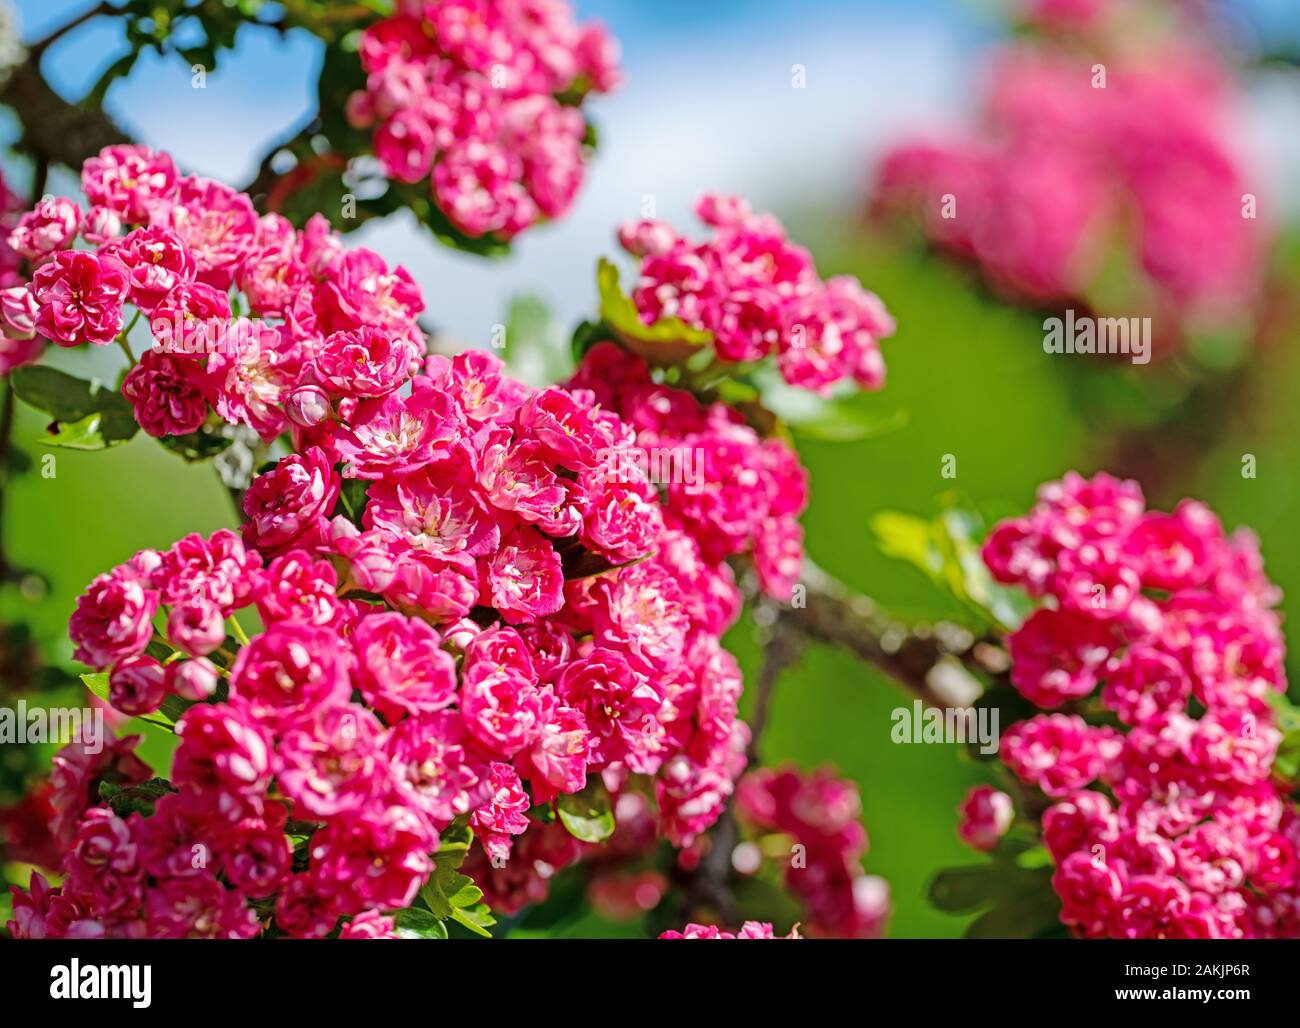 Flowering Crataegus laevigata in spring Stock Photo